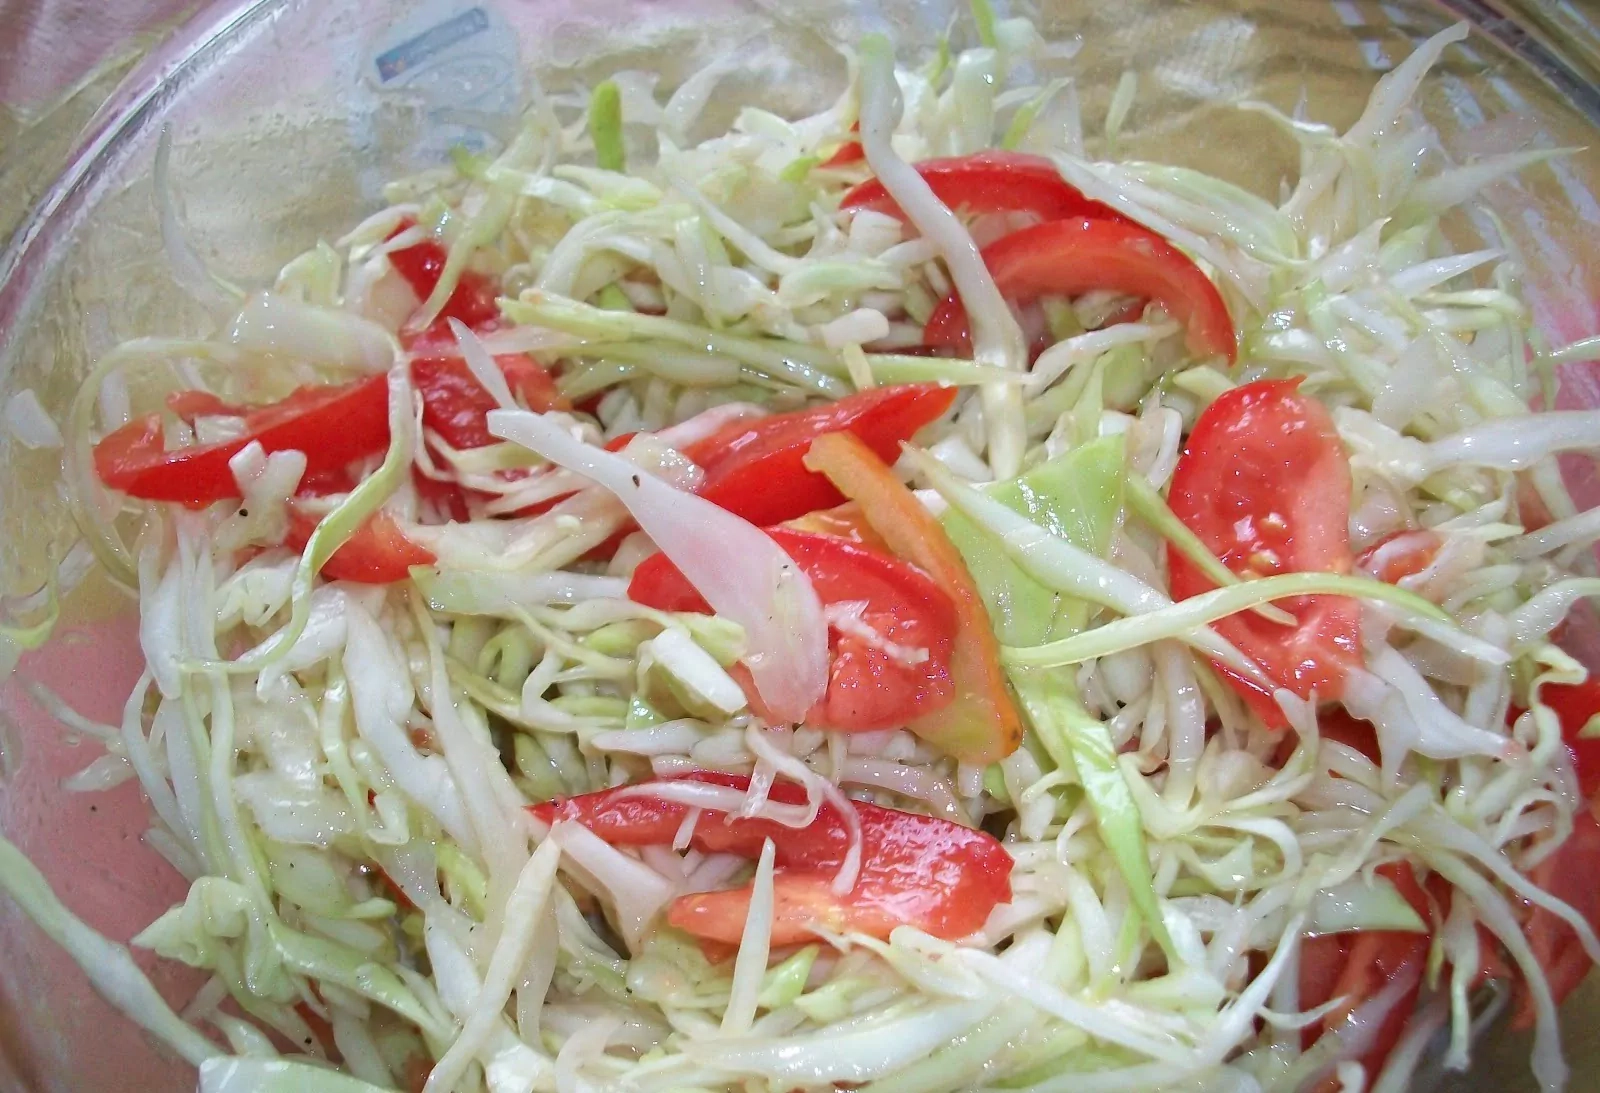 Kopūstų ir pomidorų salotos su skaniuoju užpilu - rusiškos virtuvės klasika!